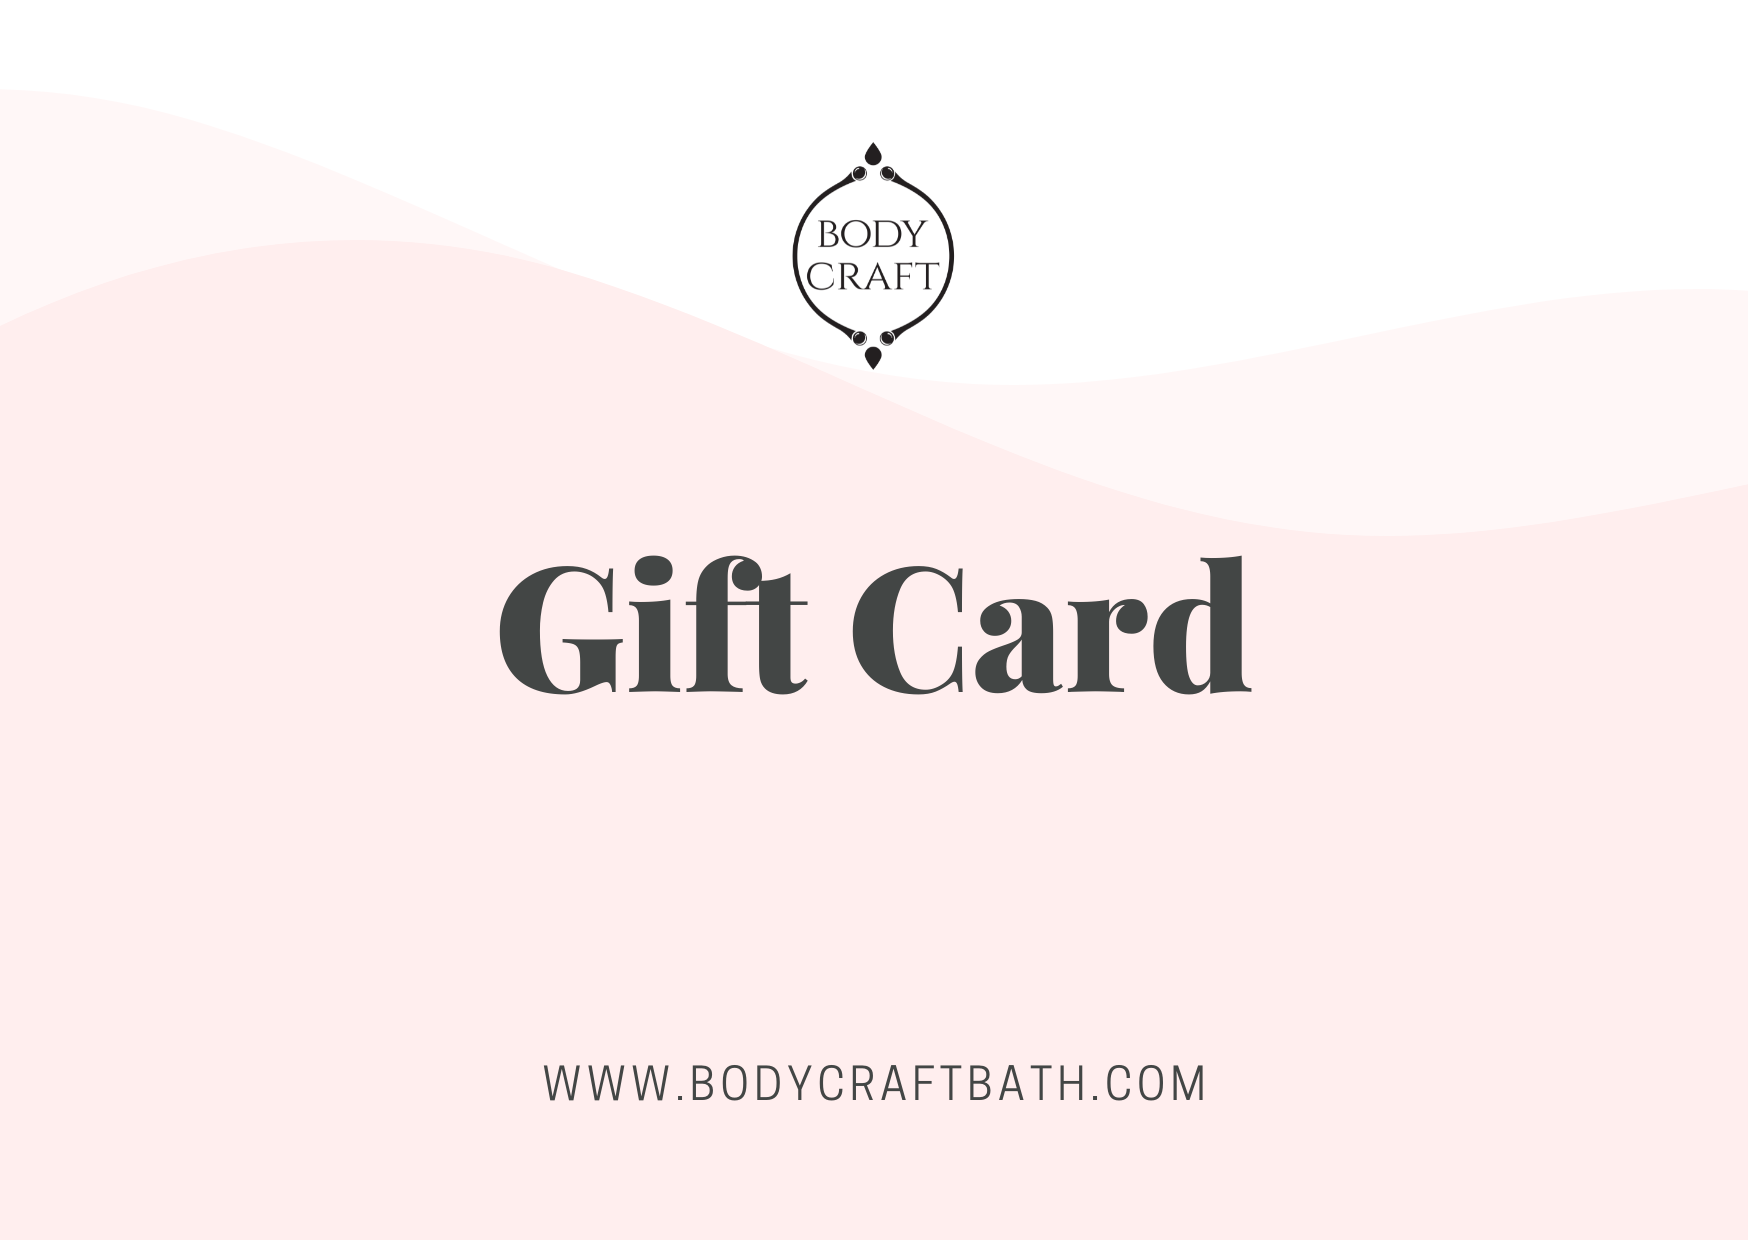 Bodycraft Bath Gift Card